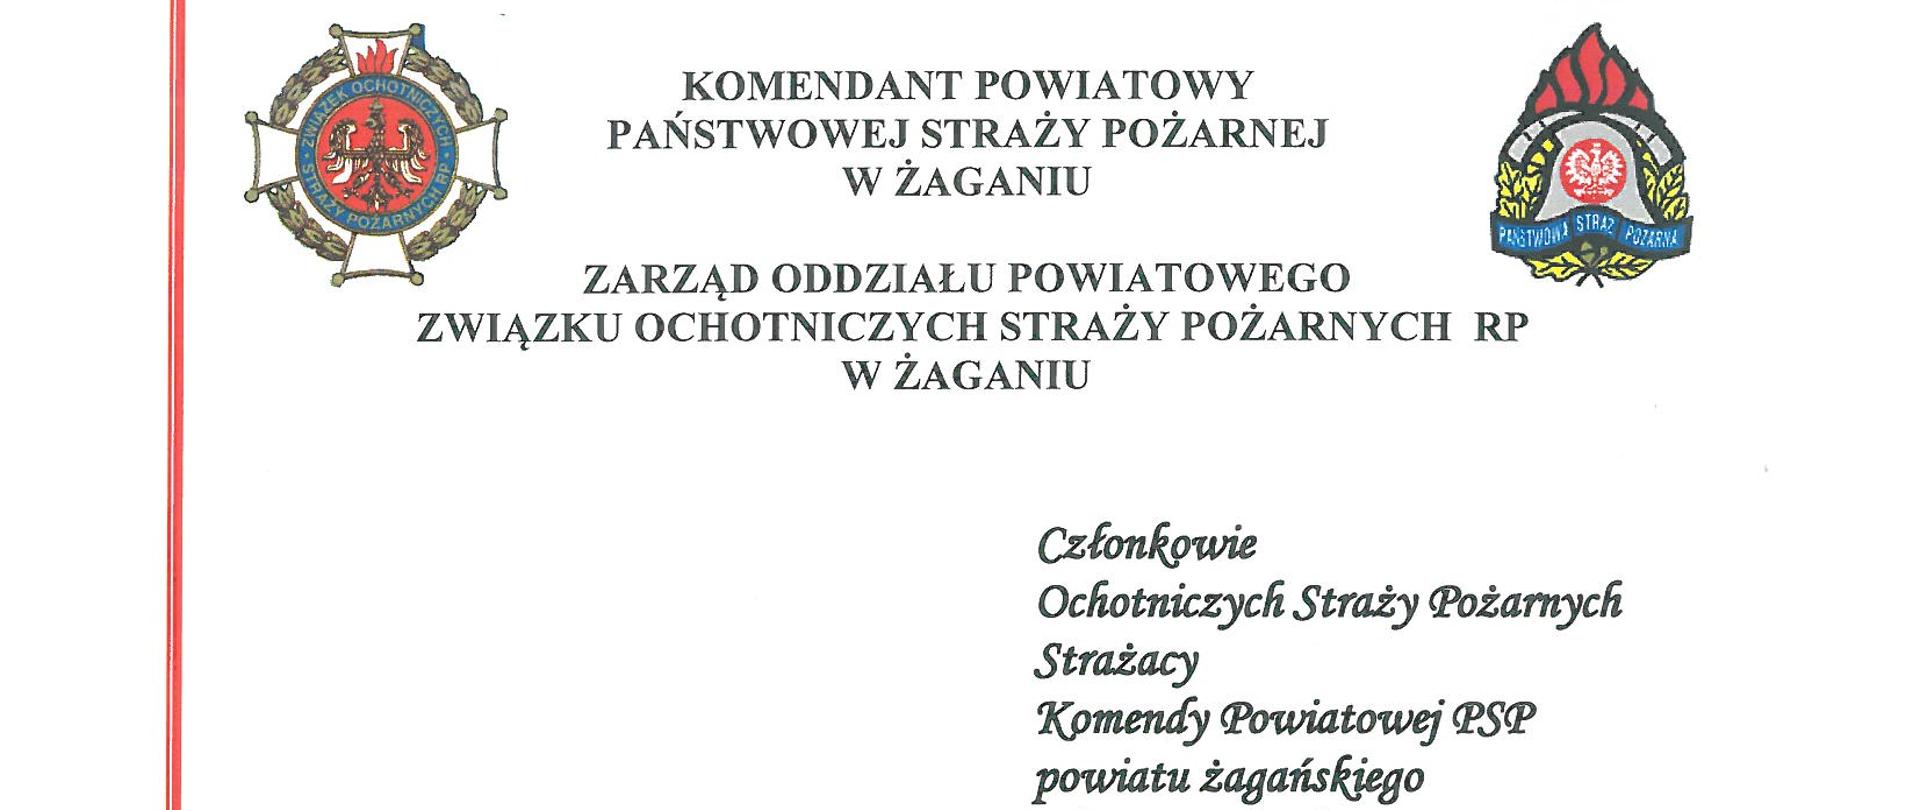 Życzenia Komendanta Powiatowego PSP w Żaganiu z okazji Dnia Strażaka